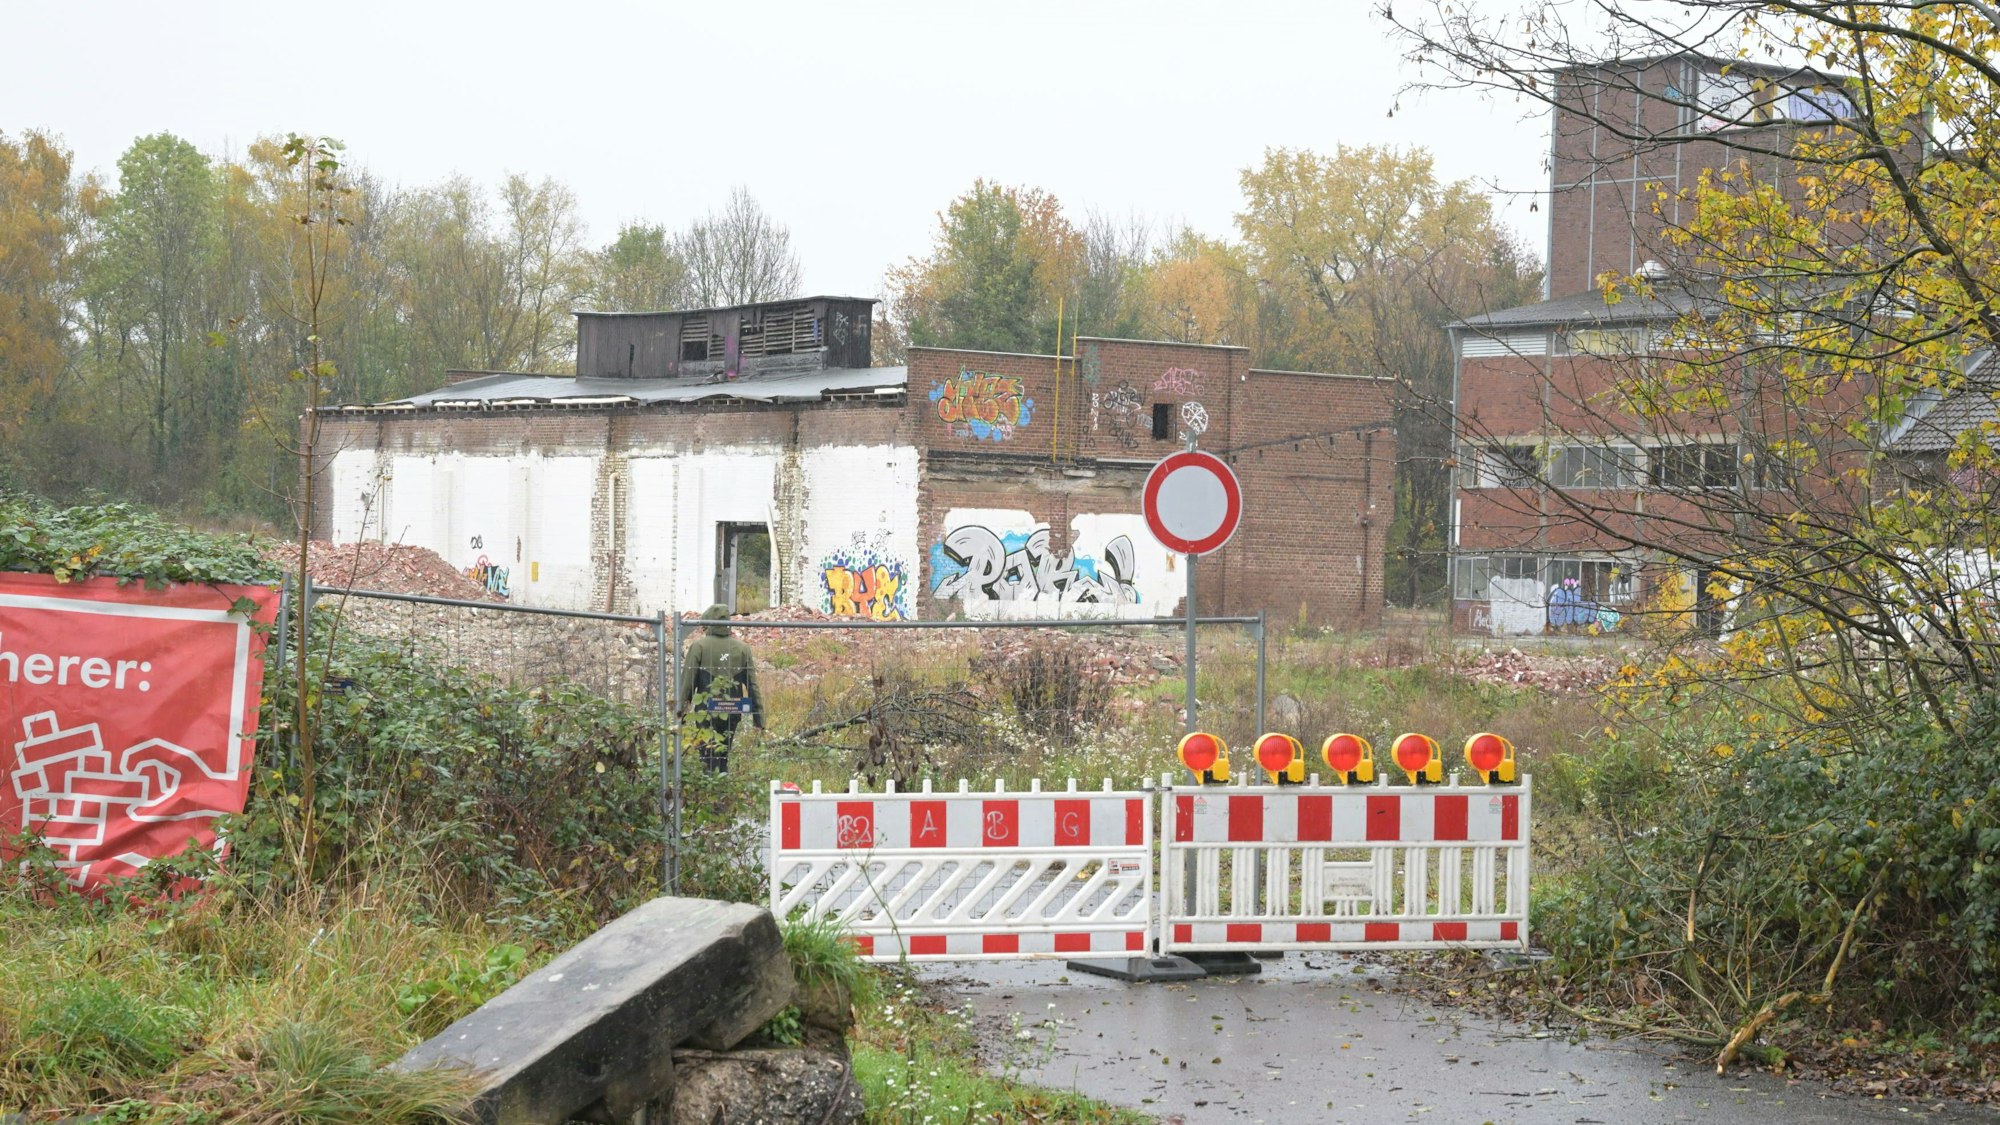 Die Zufahrtsstraße ist mit zwei rot-weißen Baken abgesperrt. Im Hintergrund sieht man verfallene Ziegelbauten der ehemaligen Papierfabrik.